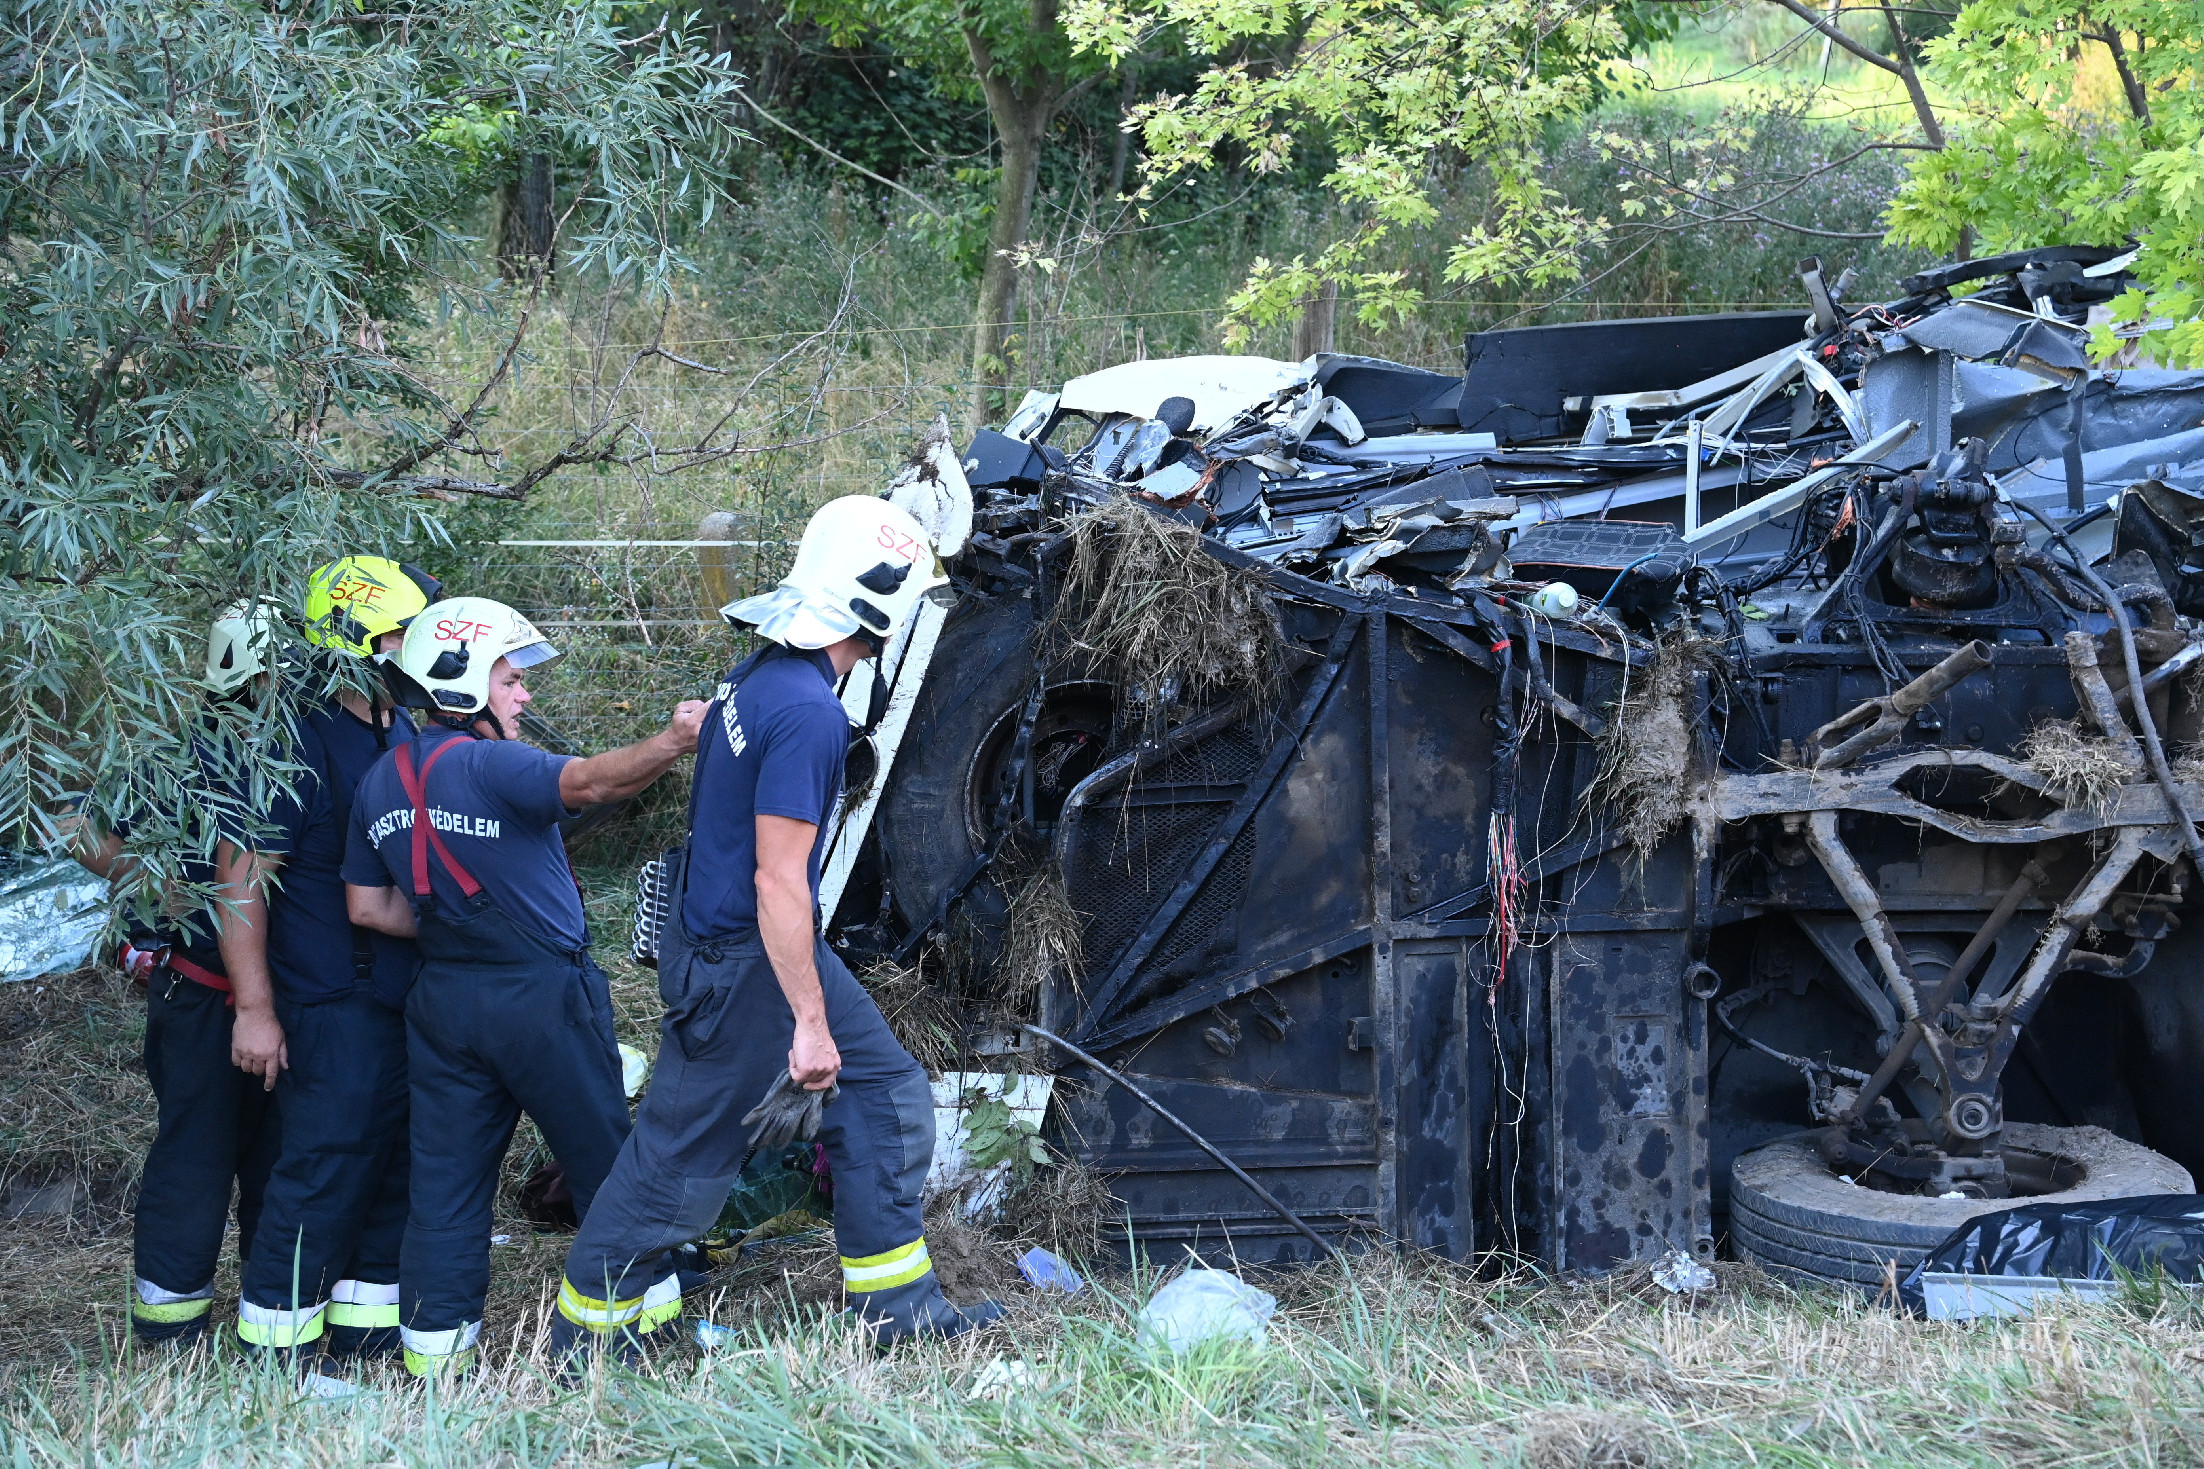 Megjöttek az első fotók az M7-esen történt halálos buszbalesetről